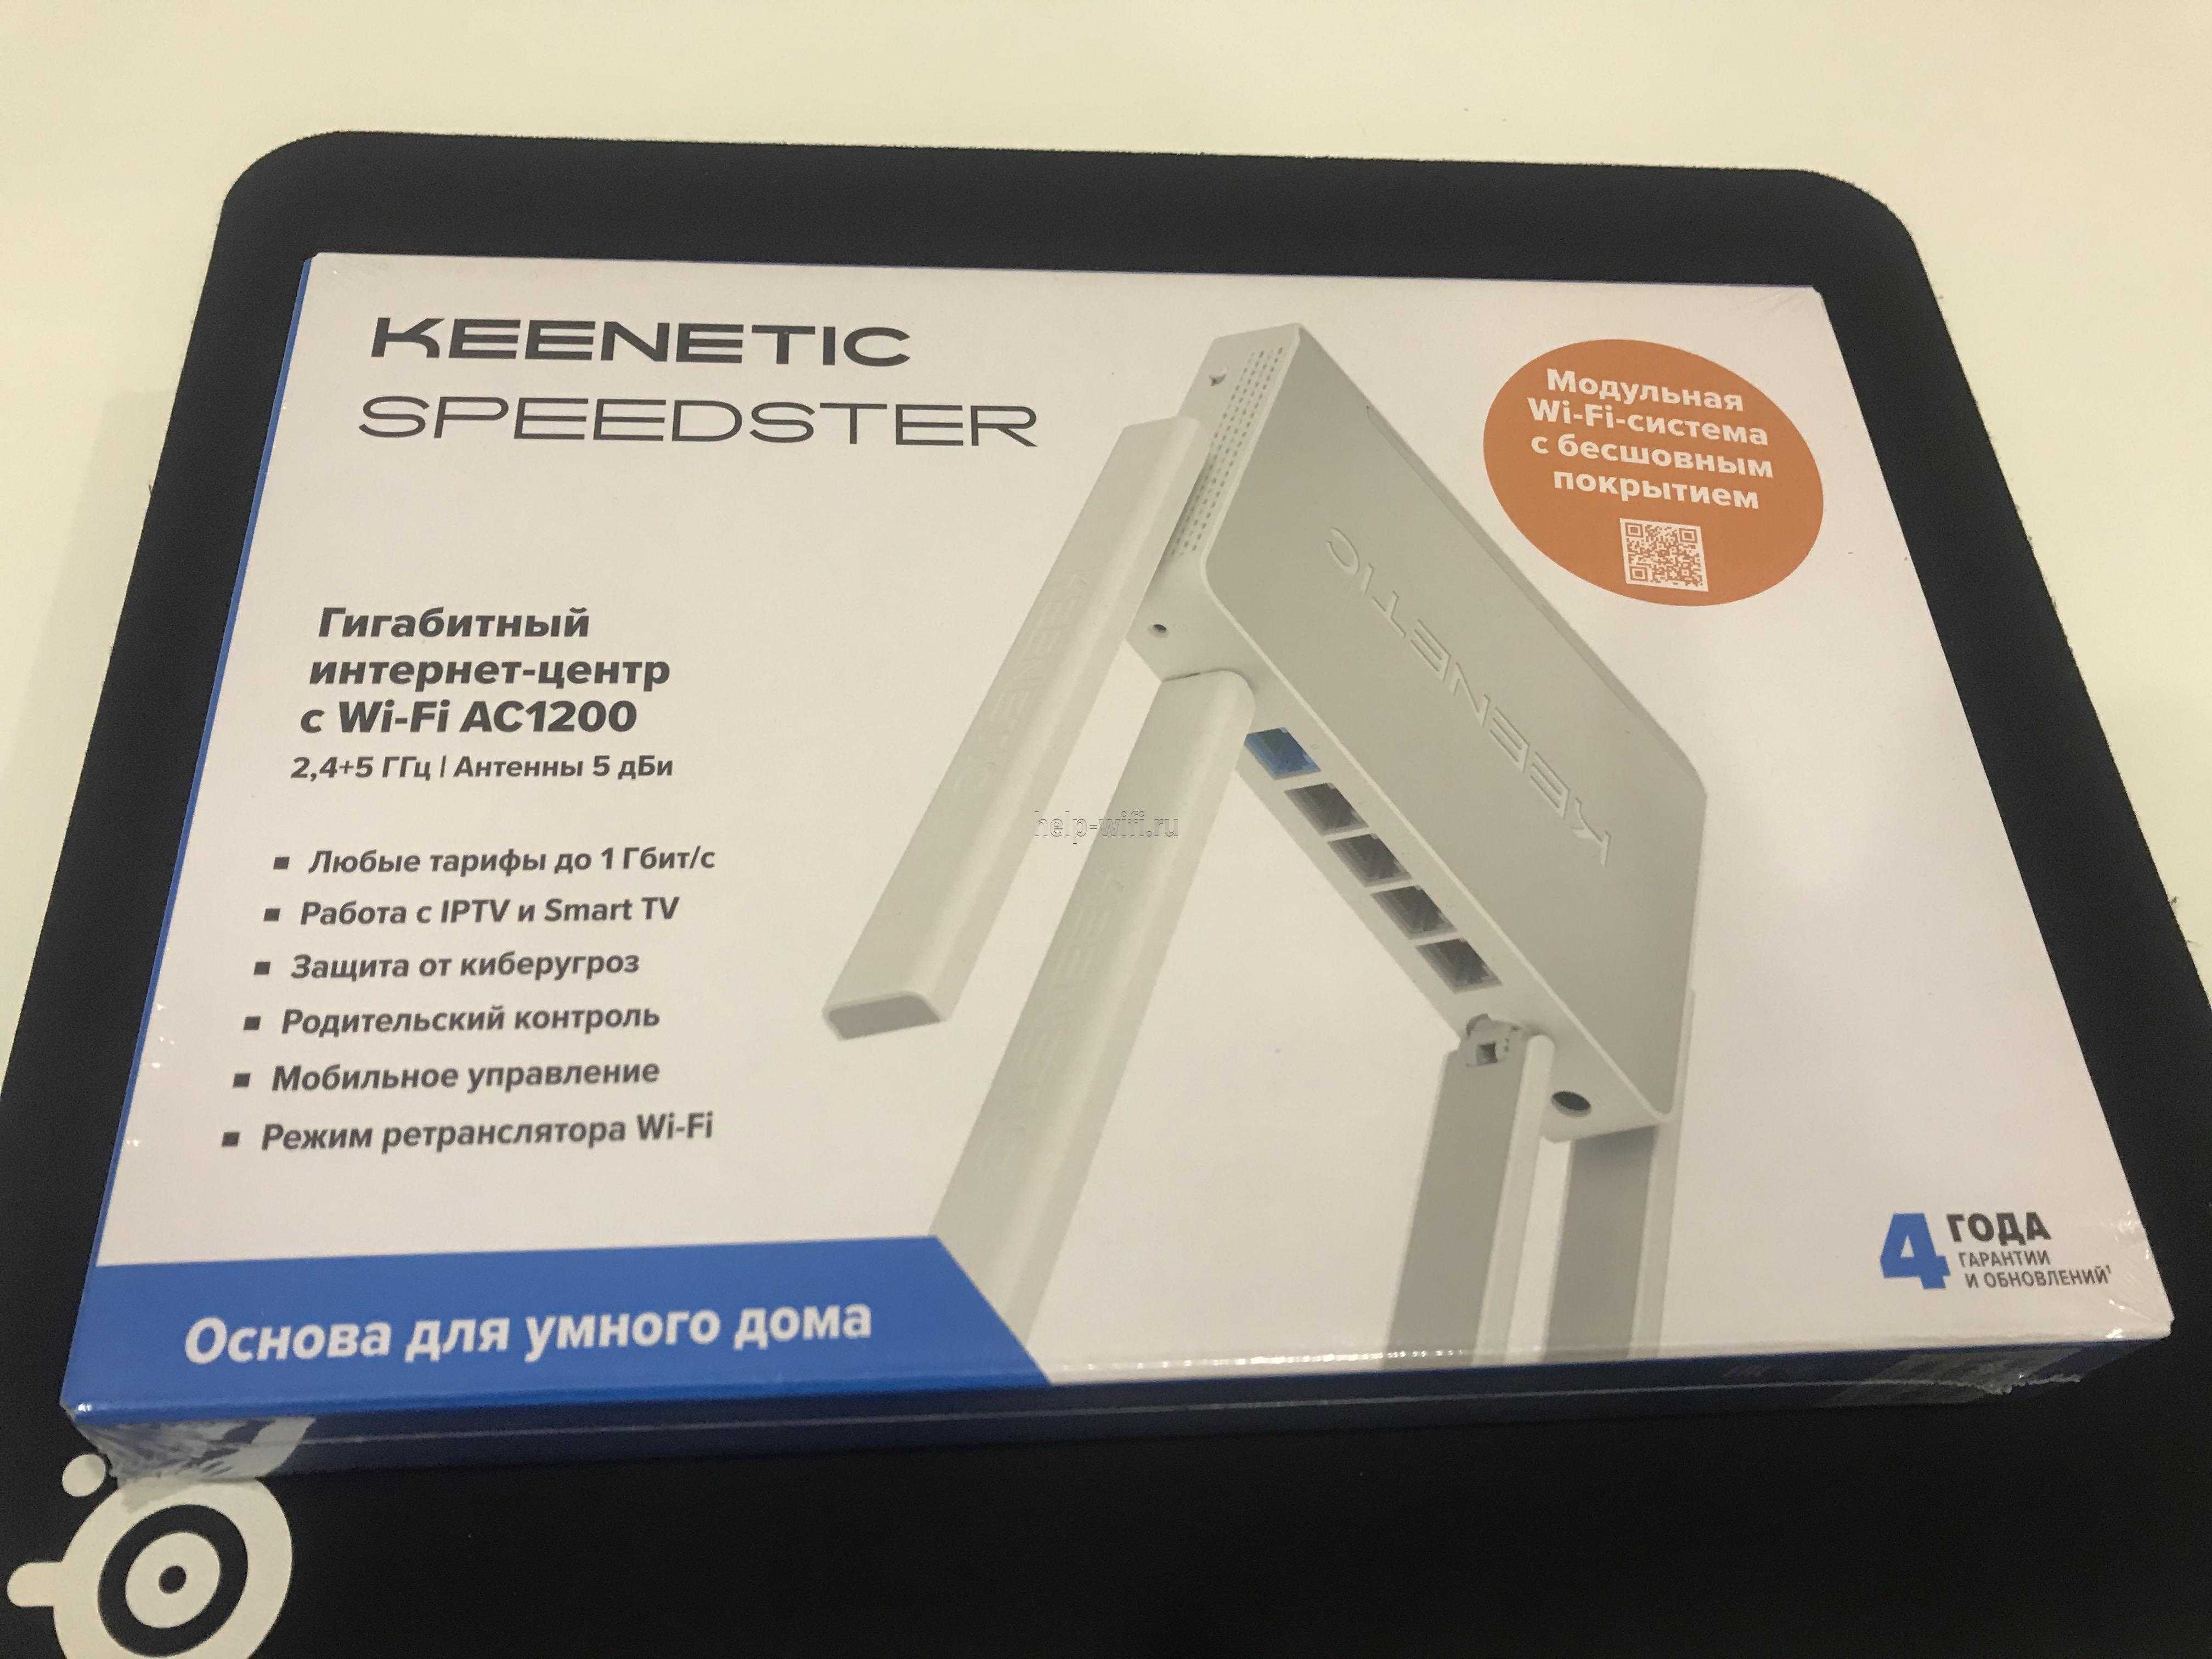 Keenetic Speedster (KN-3010) - короткий но максимально информативный обзор Для большего удобства добавлены характеристики отзывы и видео